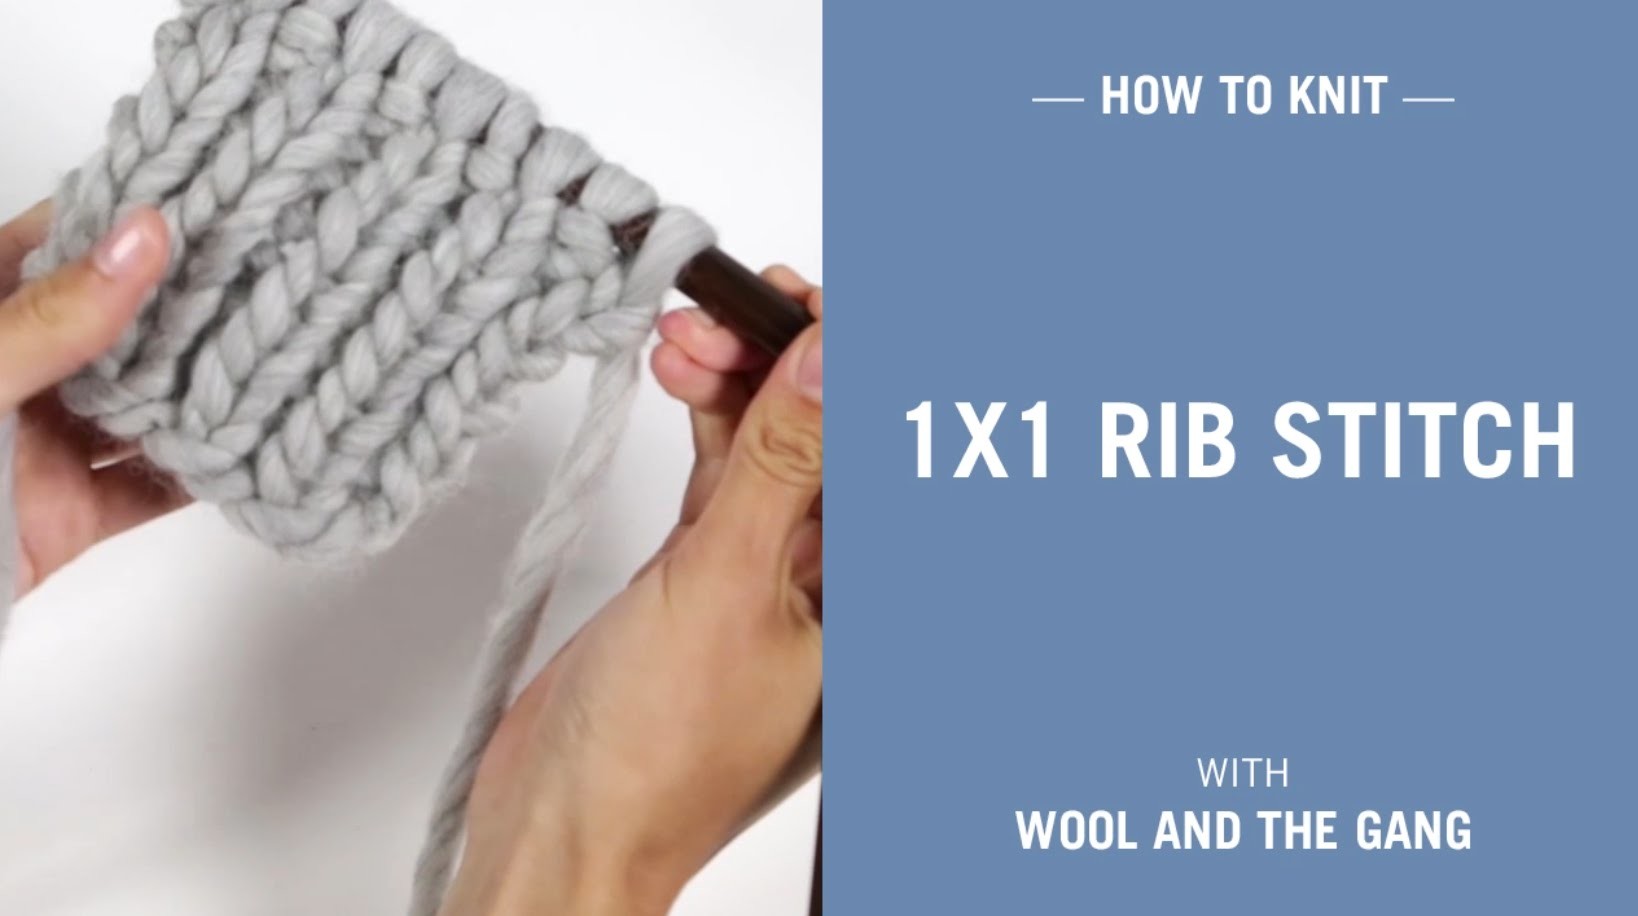 How to knit 1x1 Rib stitch